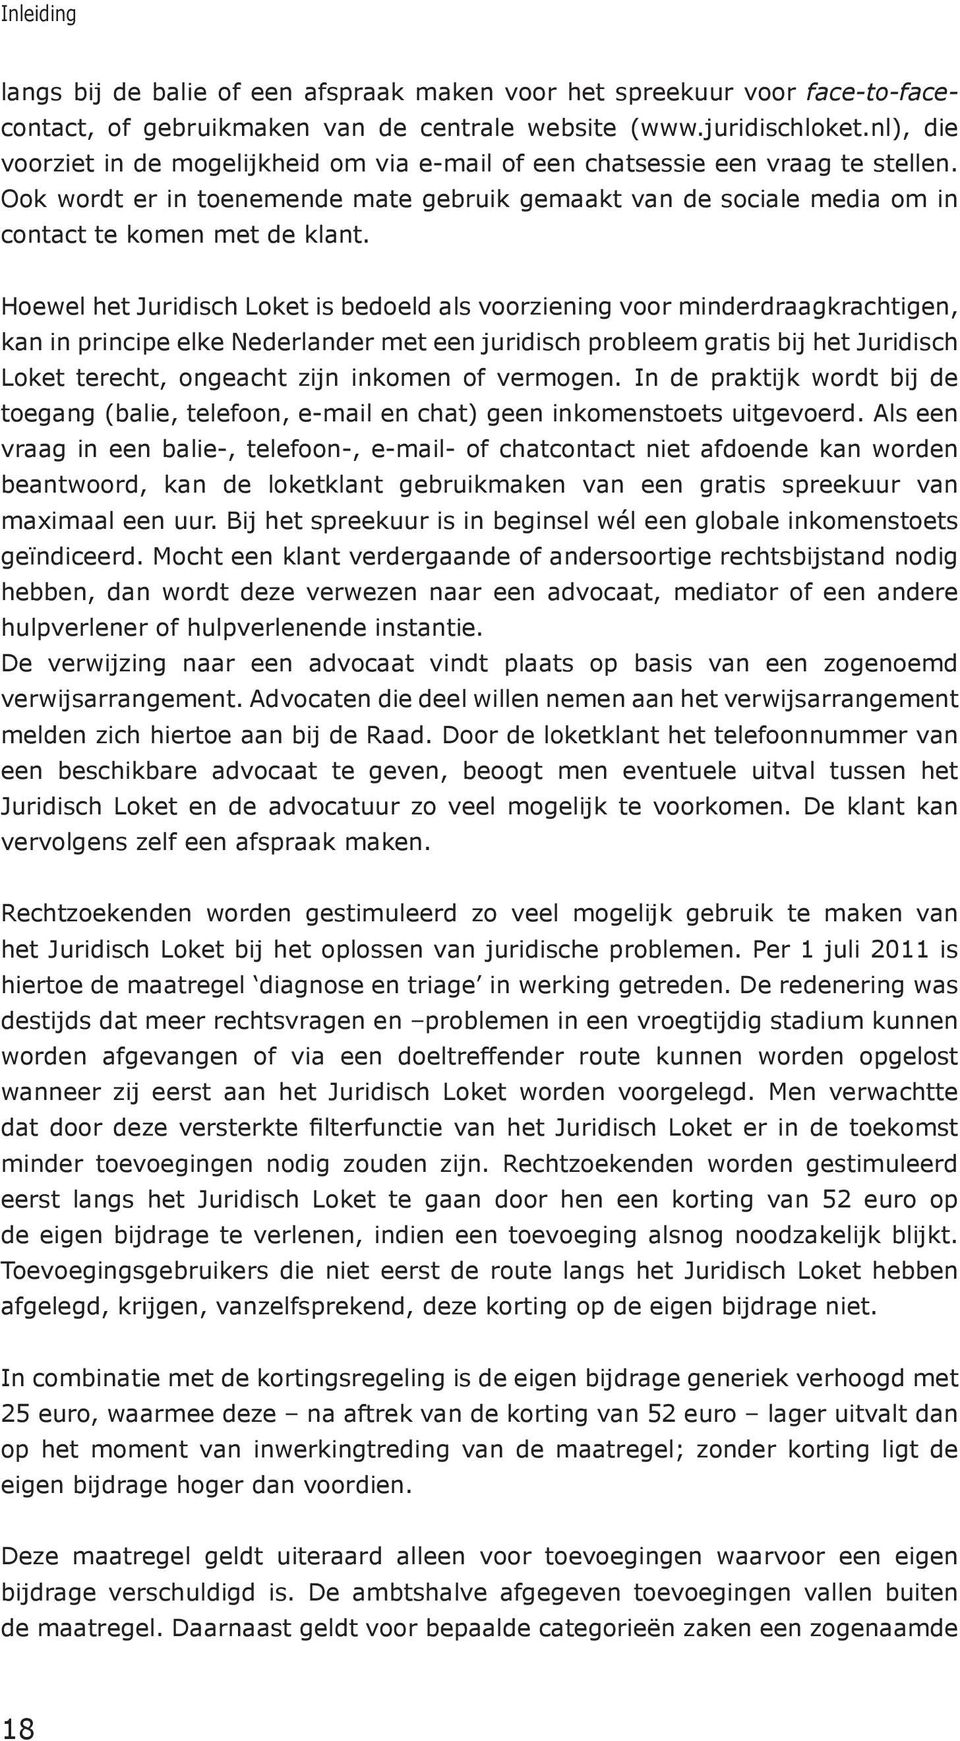 Hoewel het Juridisch Loket is bedoeld als voorziening voor minderdraagkrachtigen, kan in principe elke Nederlander met een juridisch probleem gratis bij het Juridisch Loket terecht, ongeacht zijn